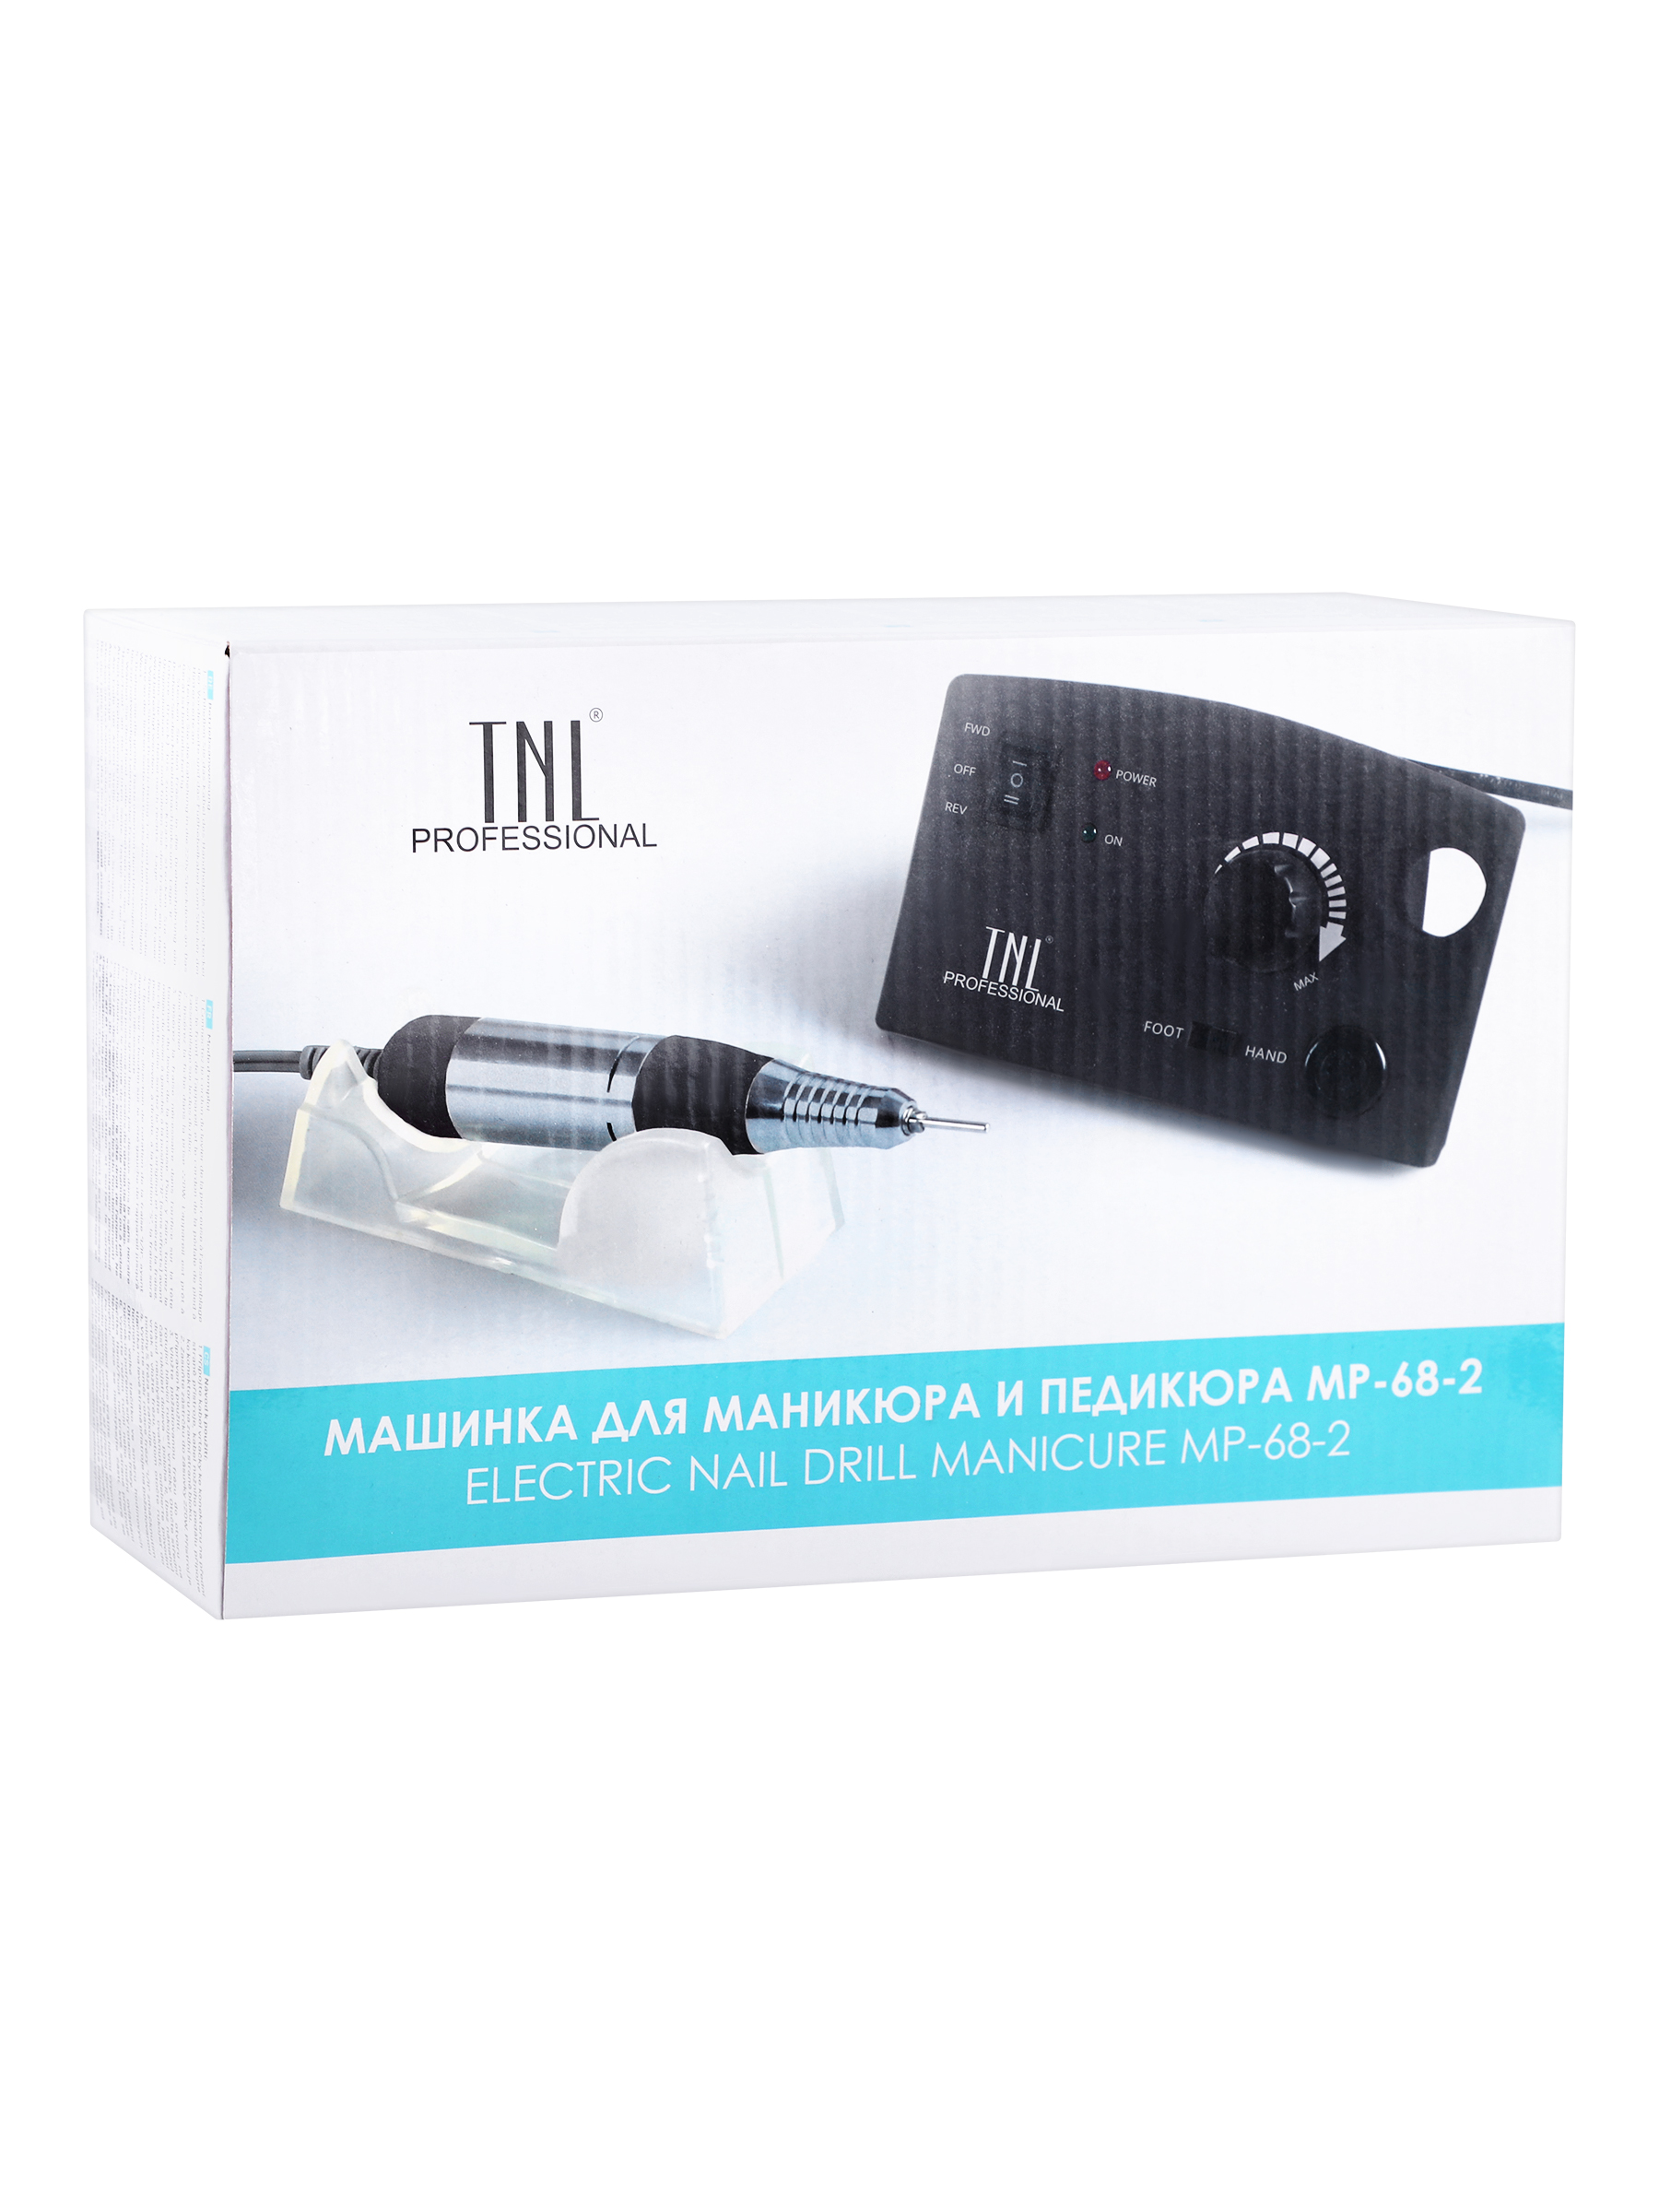 источник бесперебойного питания ippon innova rt 1500 euro 1549935 Аппарат для маникюра TNL, Аппарат для маникюра и педикюра MP-68-2